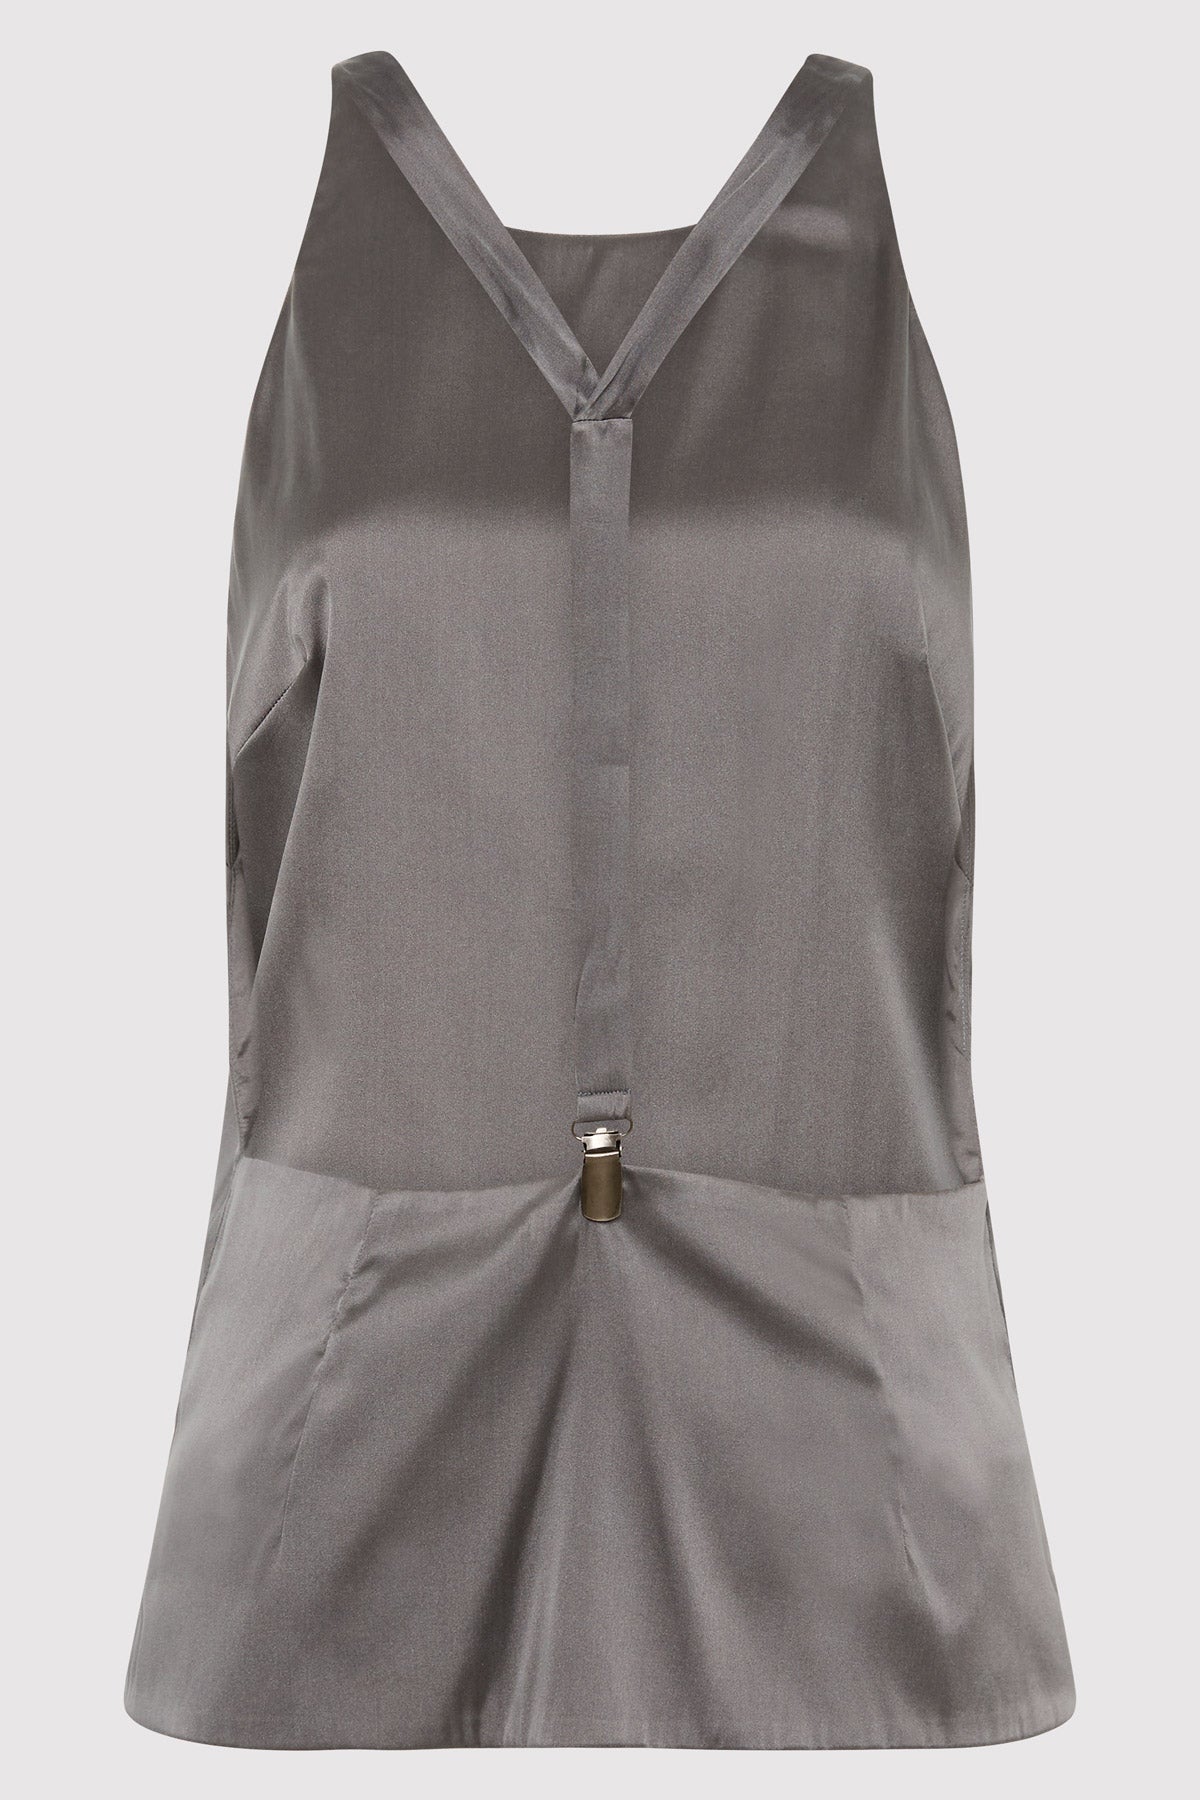 Soft Silk Suspender Top - Pewter Grey